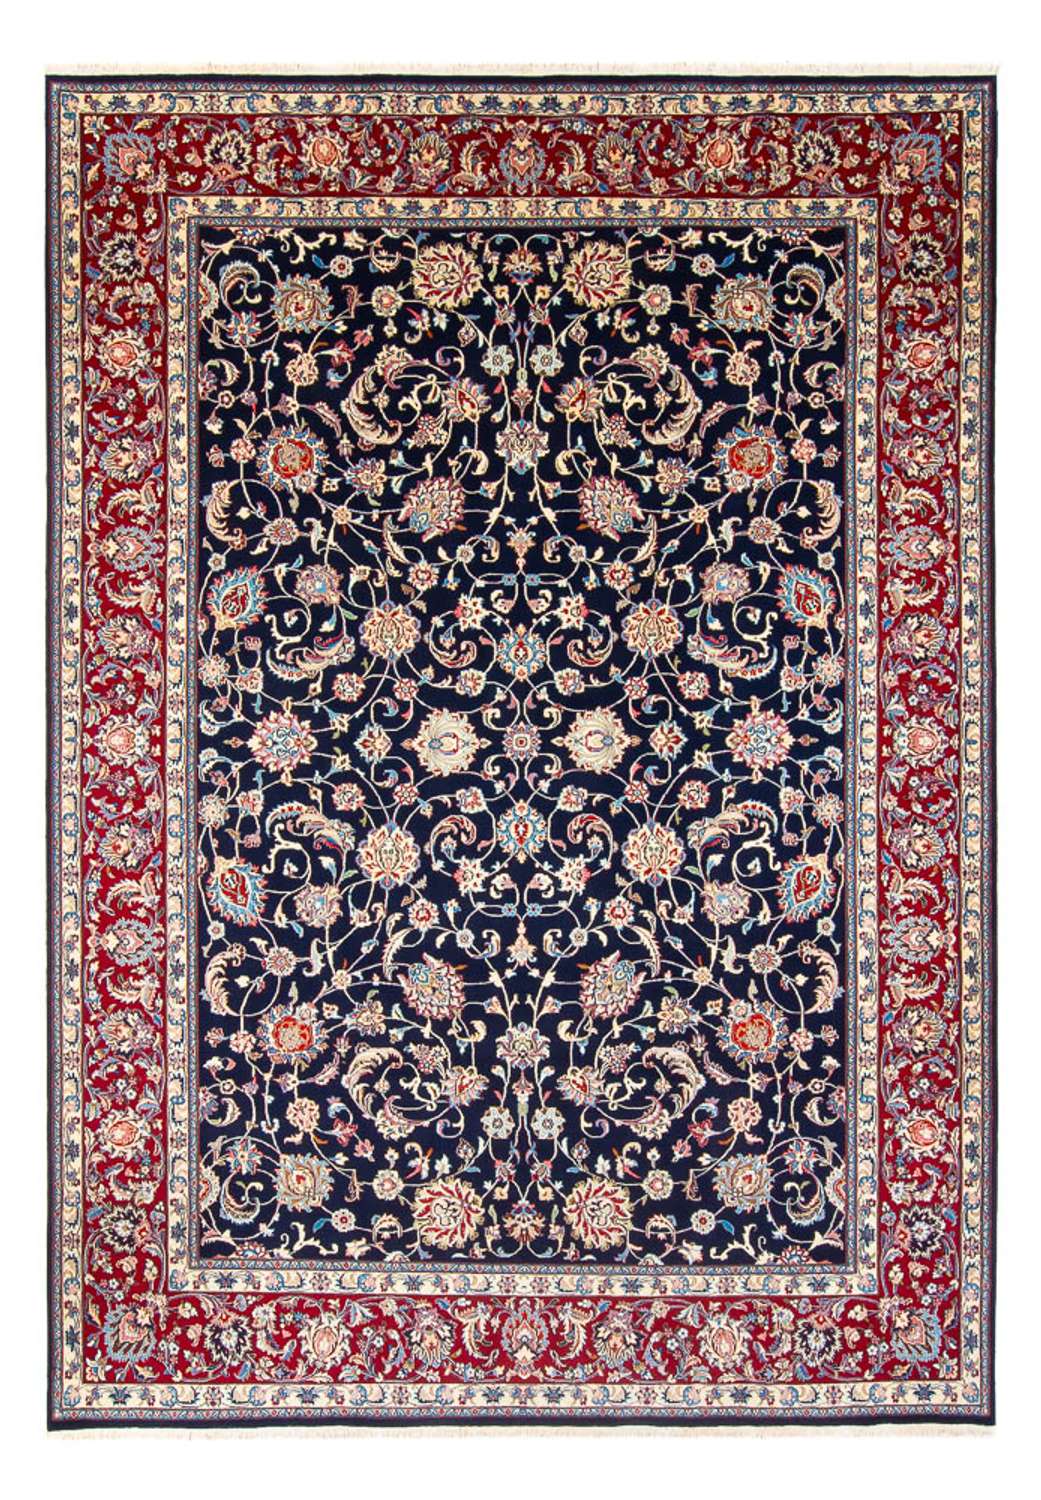 Tapis persan - Classique - 348 x 248 cm - bleu foncé